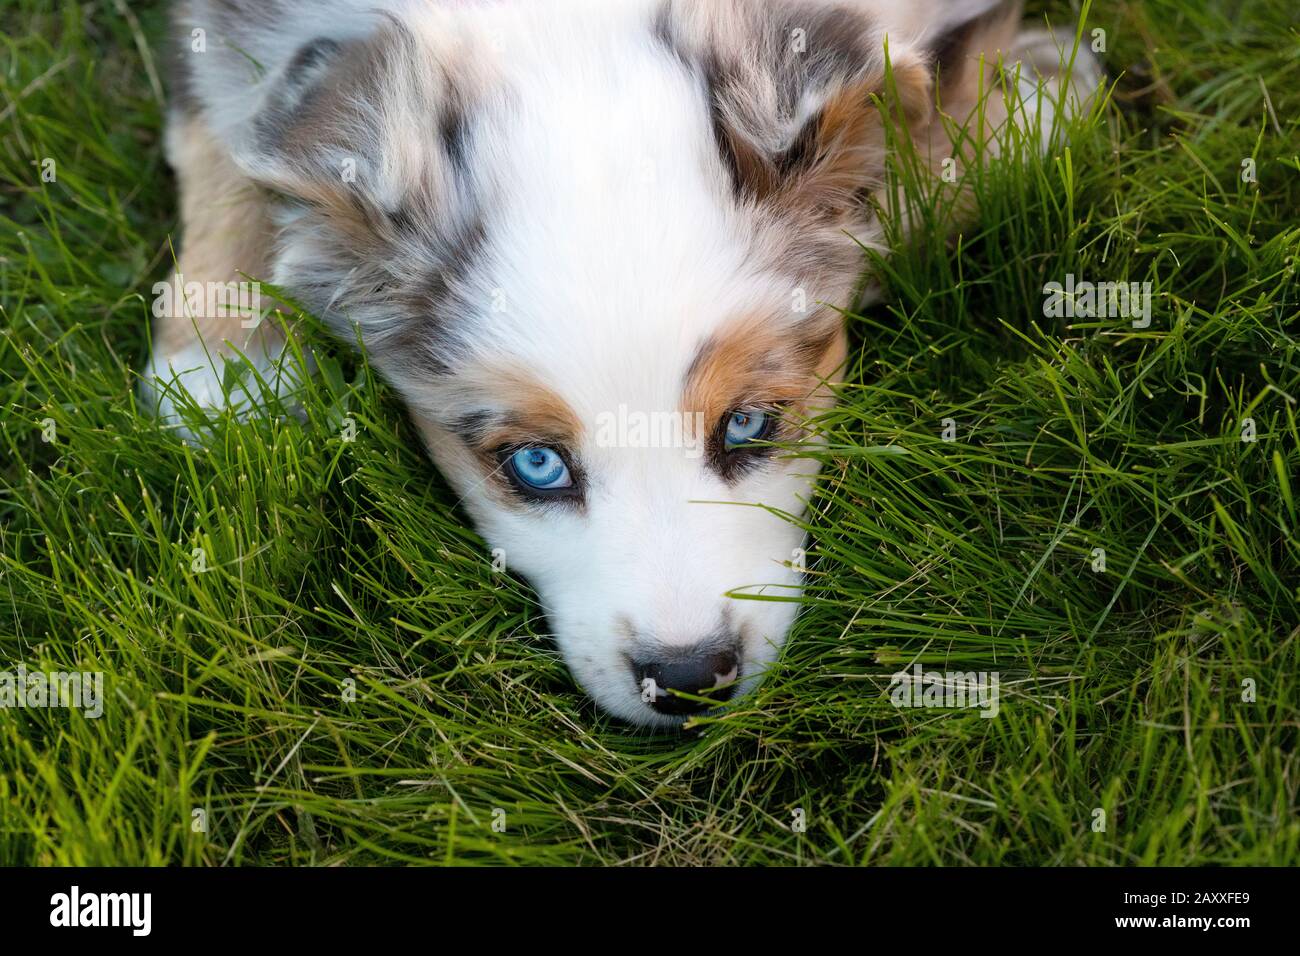 Cachorro de pastor australiano con ojos azules, tumbado en la hierba. Foto de stock